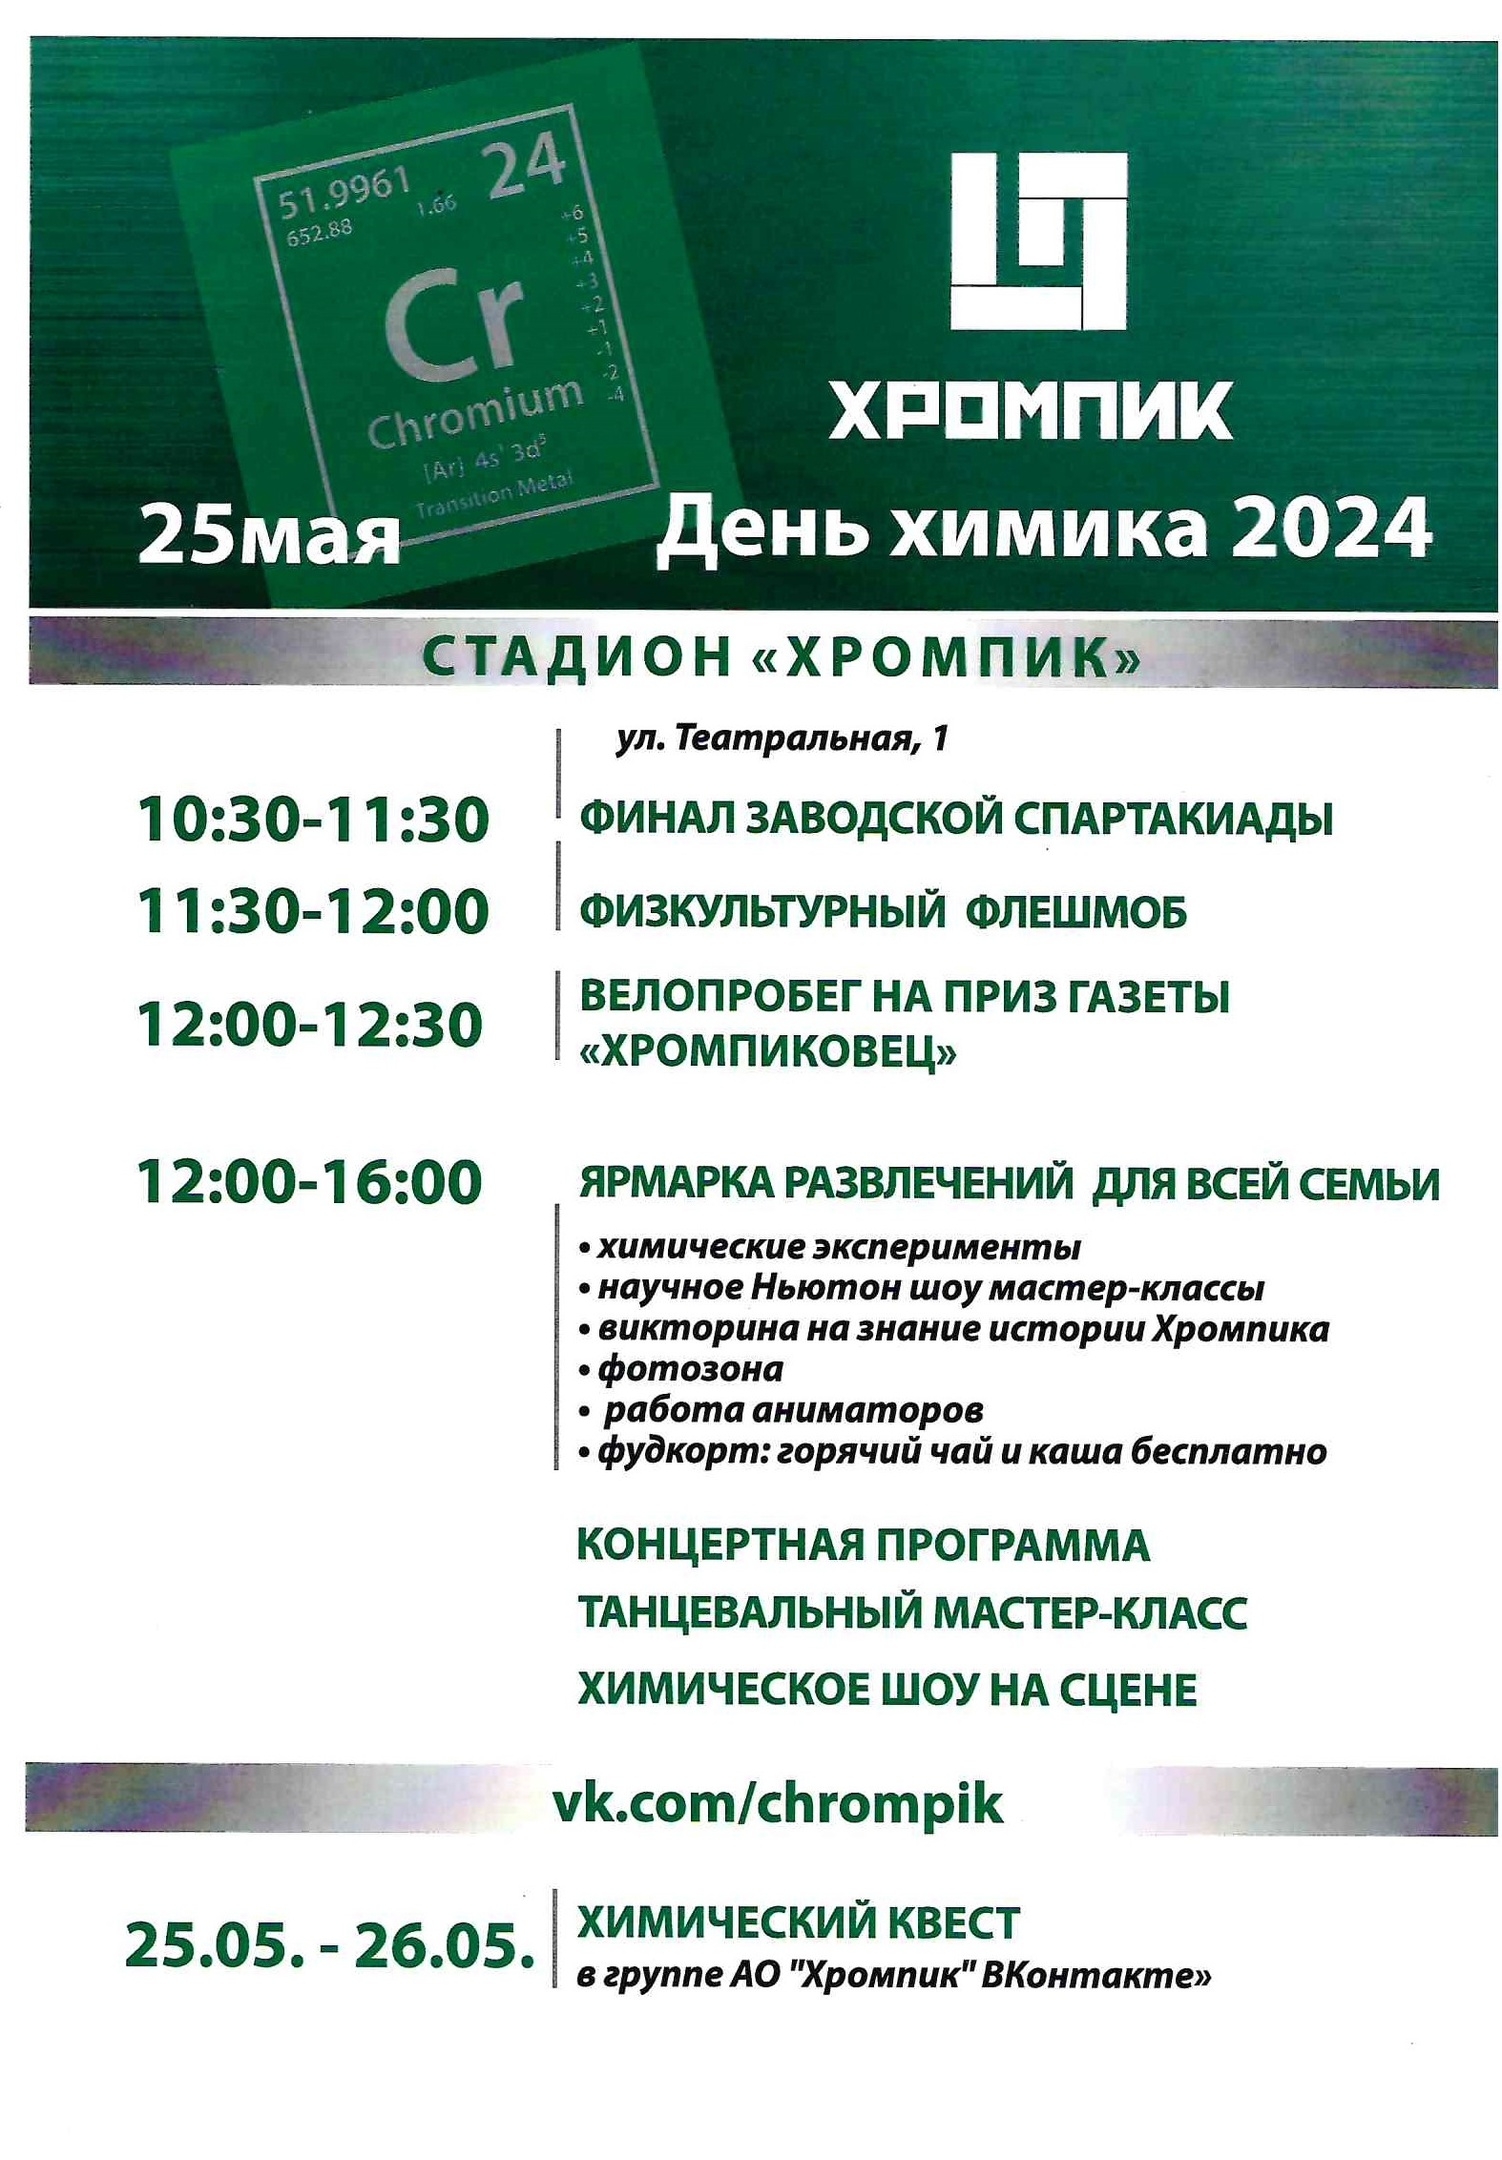 Сегодня в Первоуральске в микрорайоне Хромпик пройдёт День химика.Программа праздника